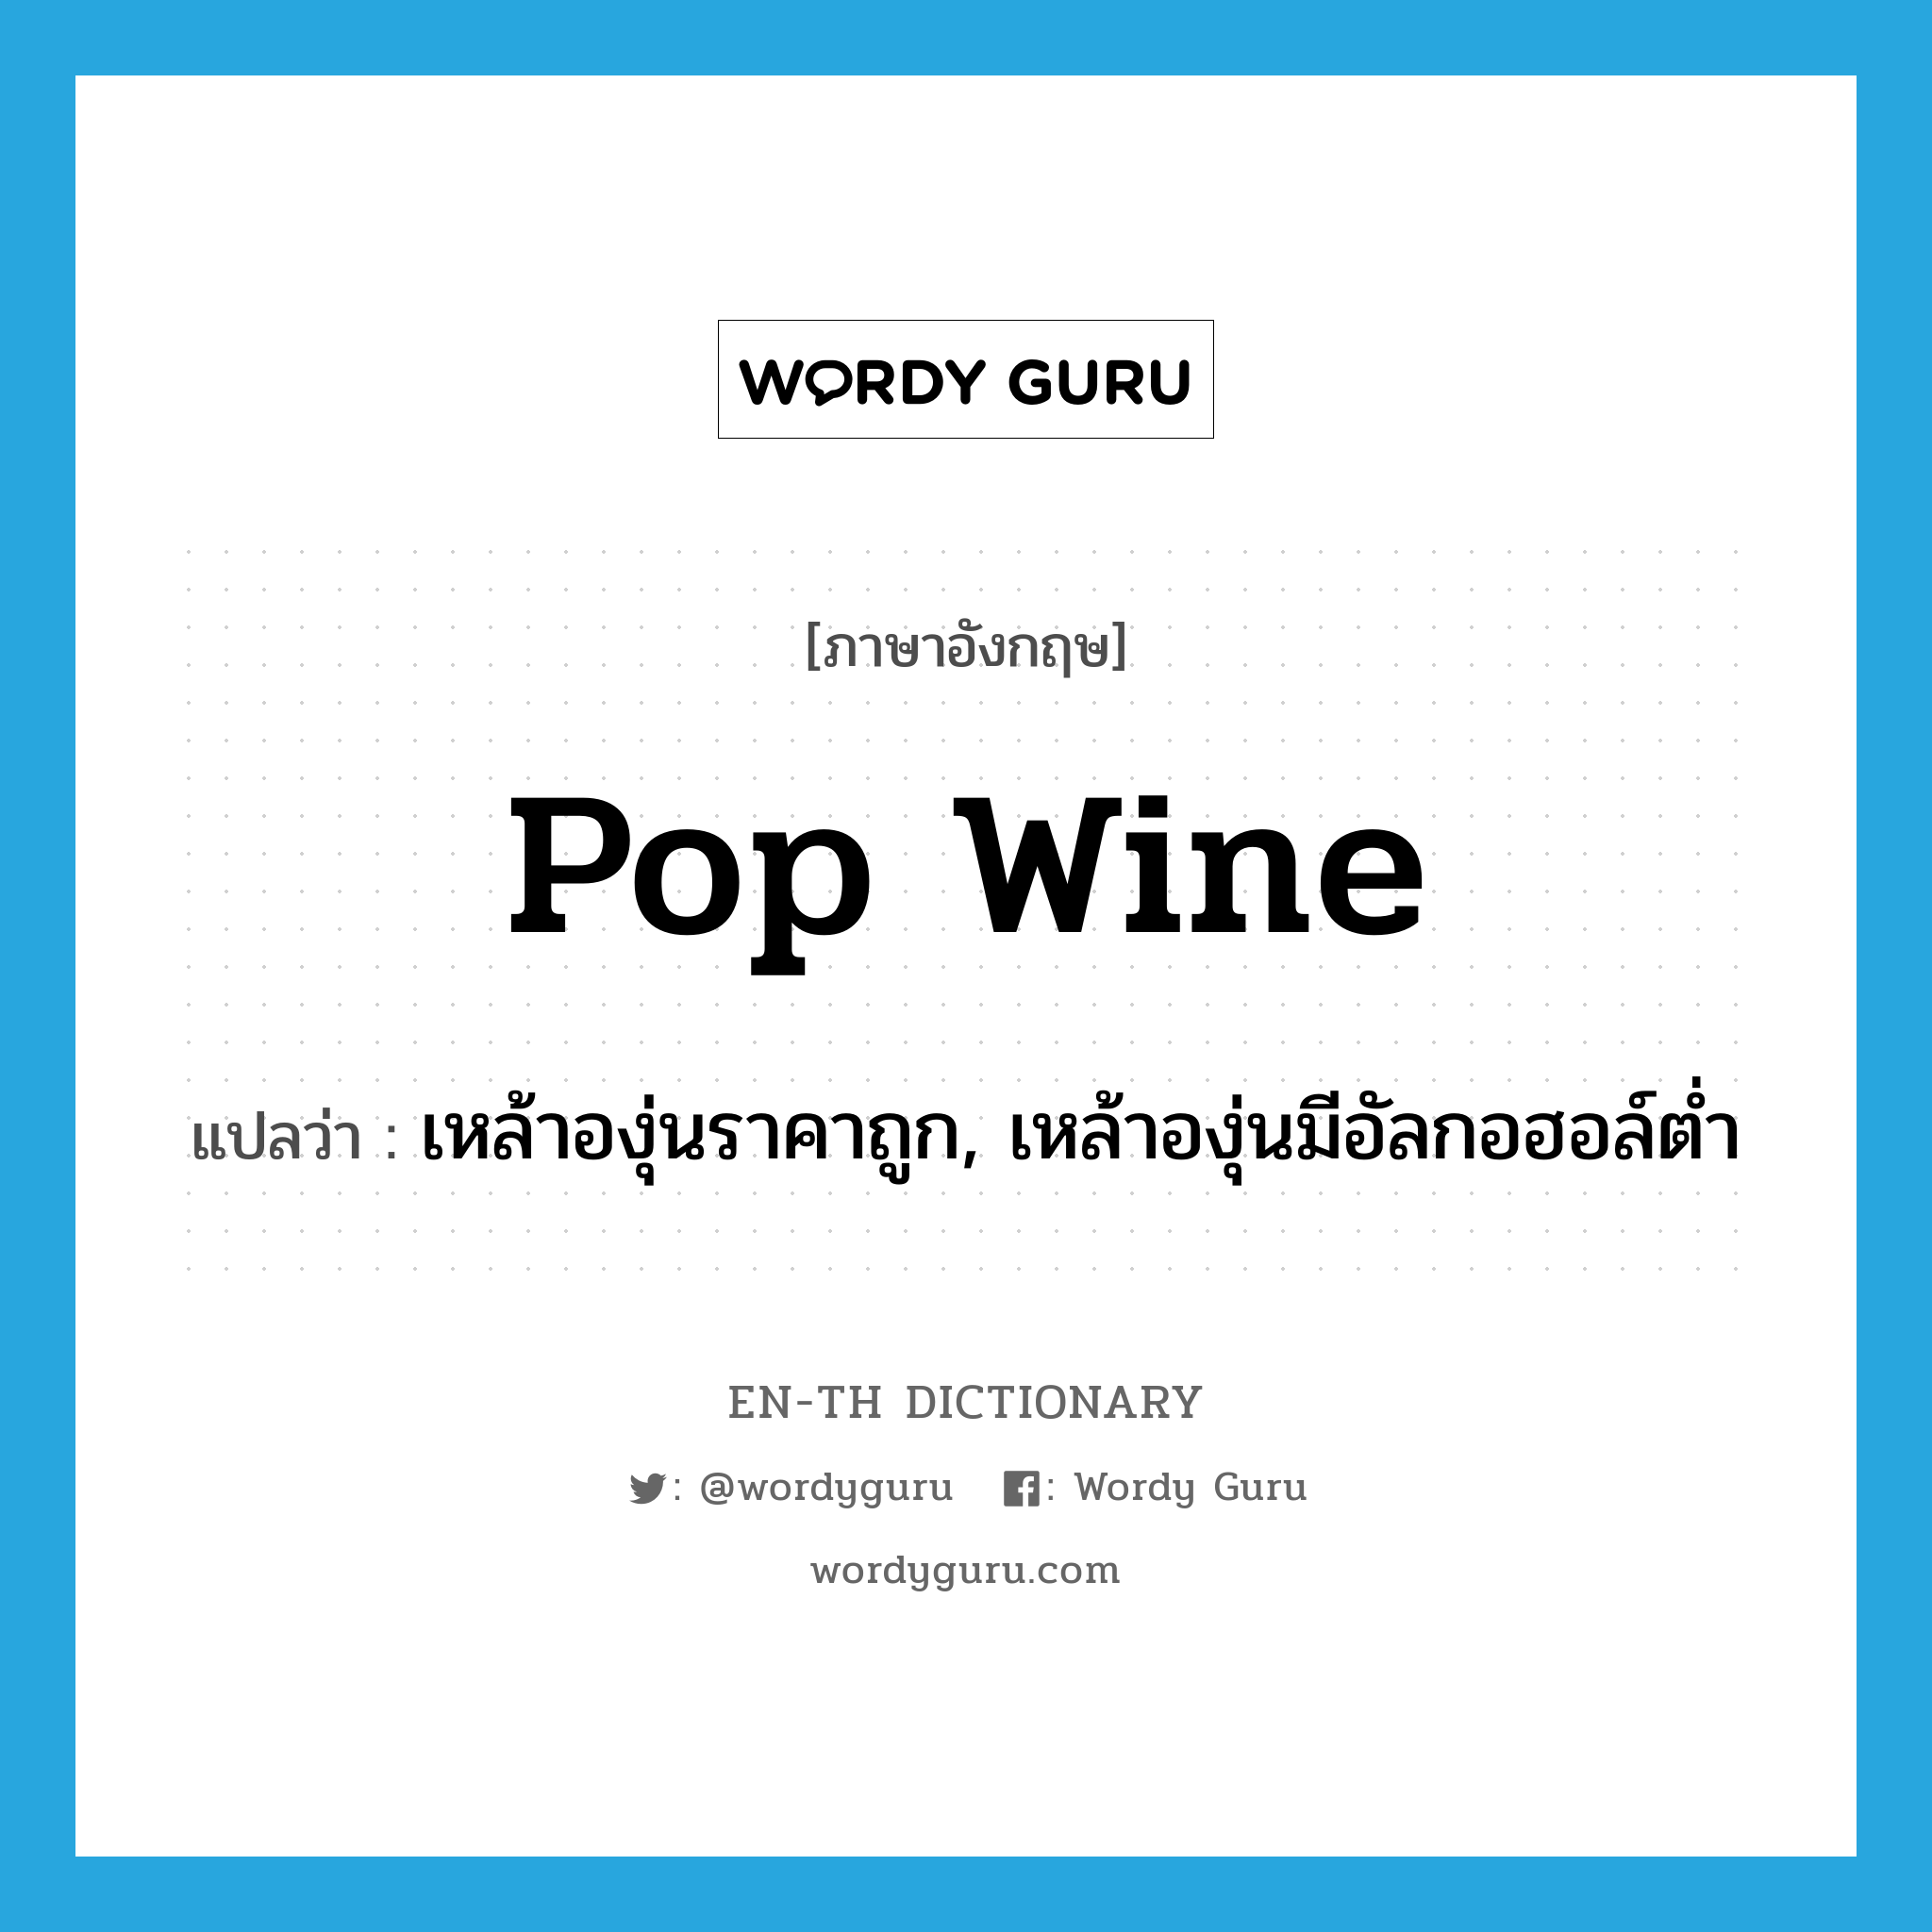 pop wine แปลว่า?, คำศัพท์ภาษาอังกฤษ pop wine แปลว่า เหล้าองุ่นราคาถูก, เหล้าองุ่นมีอัลกอฮอล์ต่ำ ประเภท SL หมวด SL